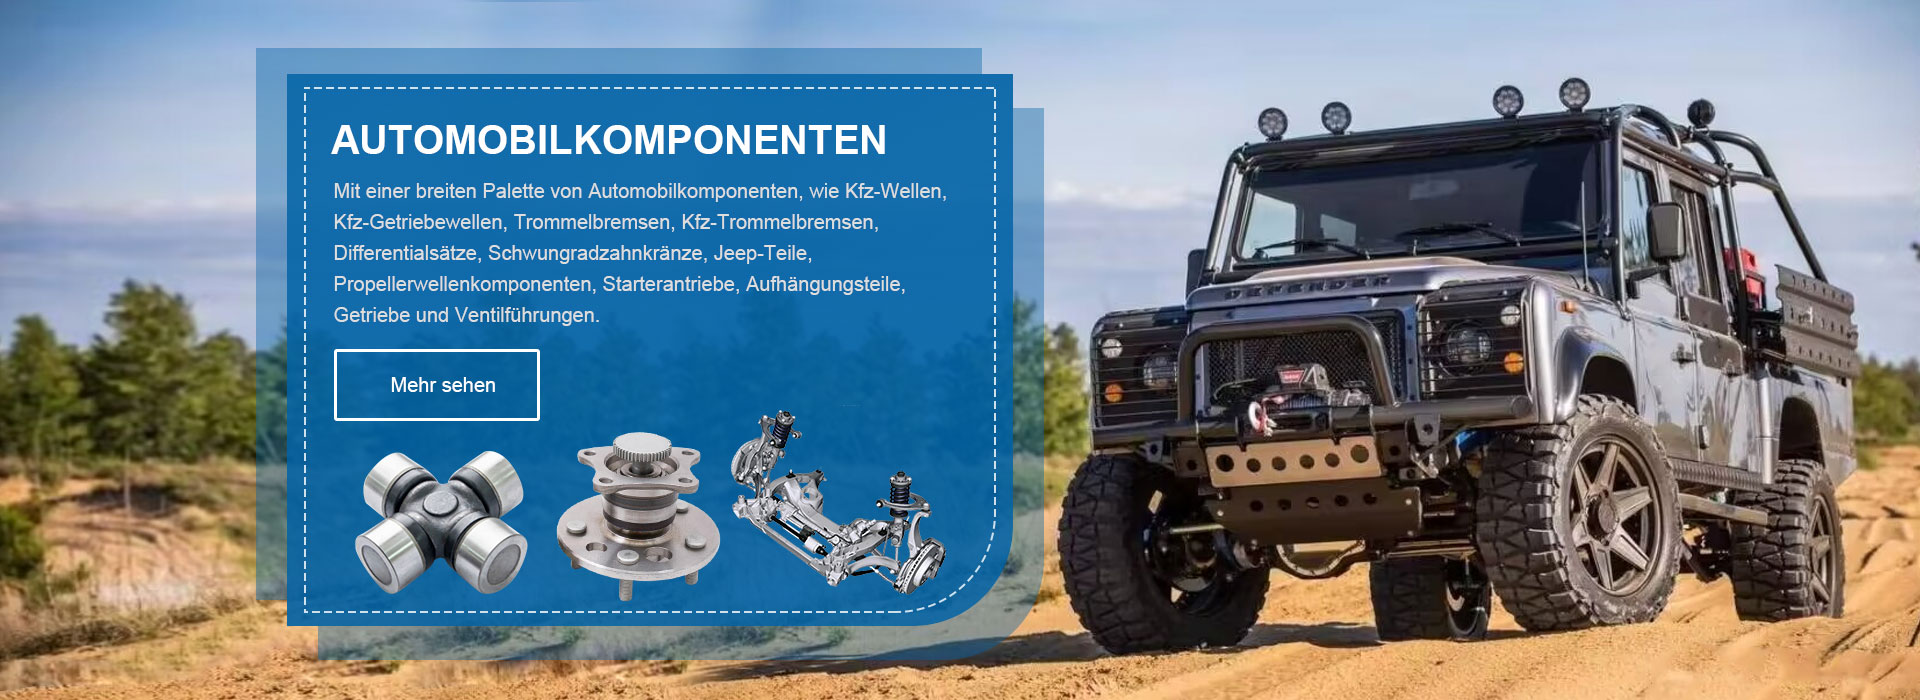 Automotive-Components